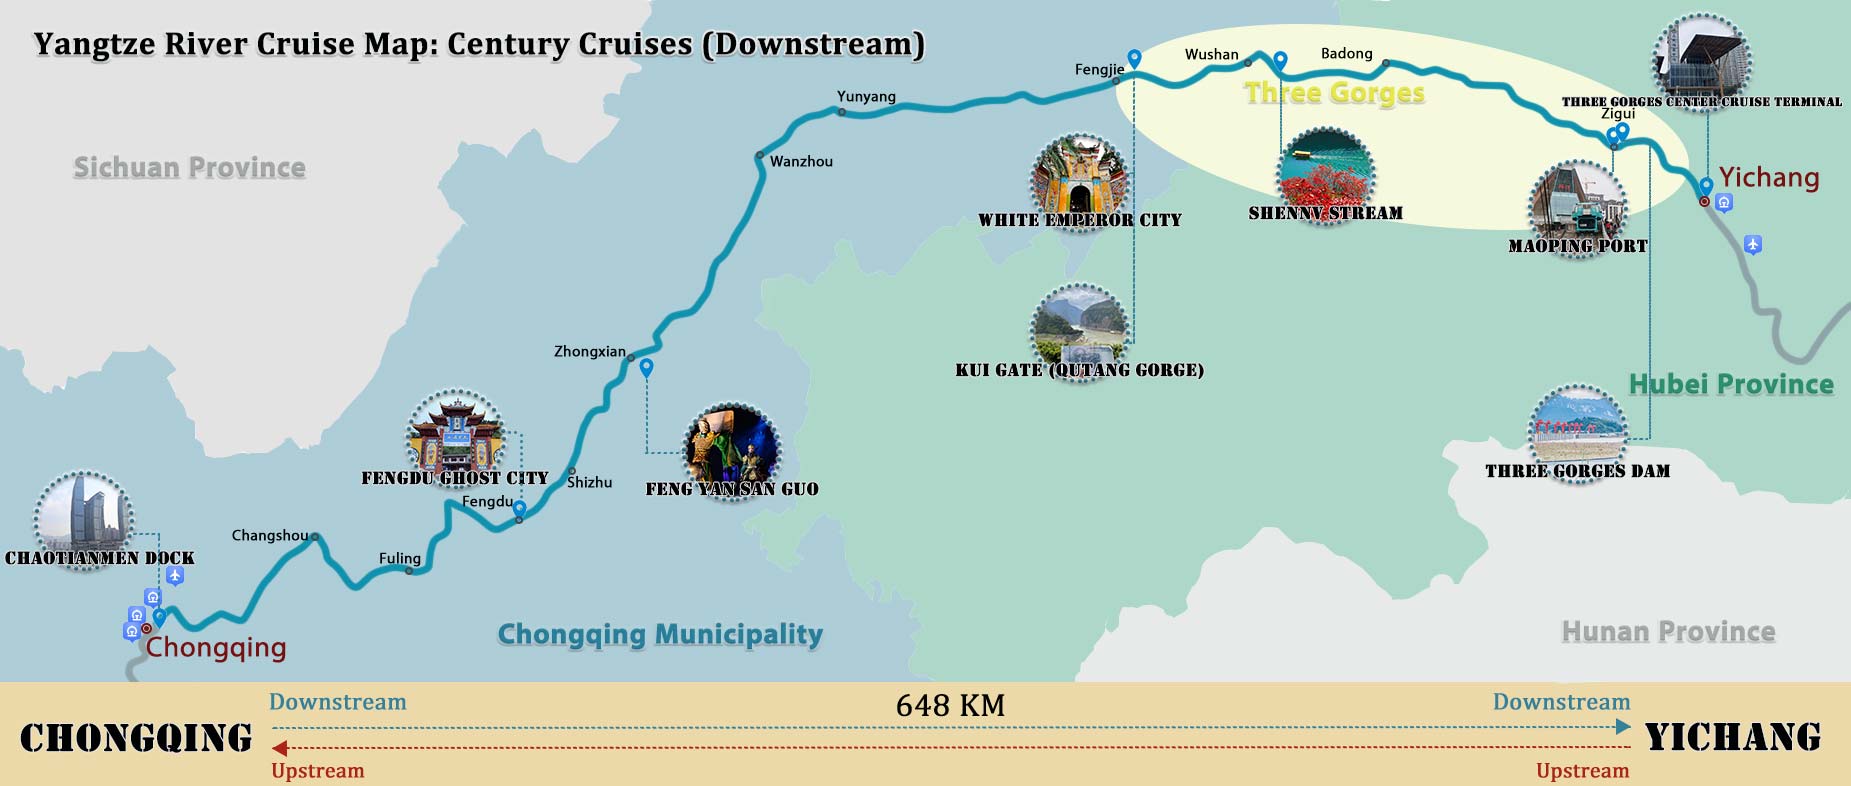 Chongqing Yichang Yangtze River Cruise Route Map